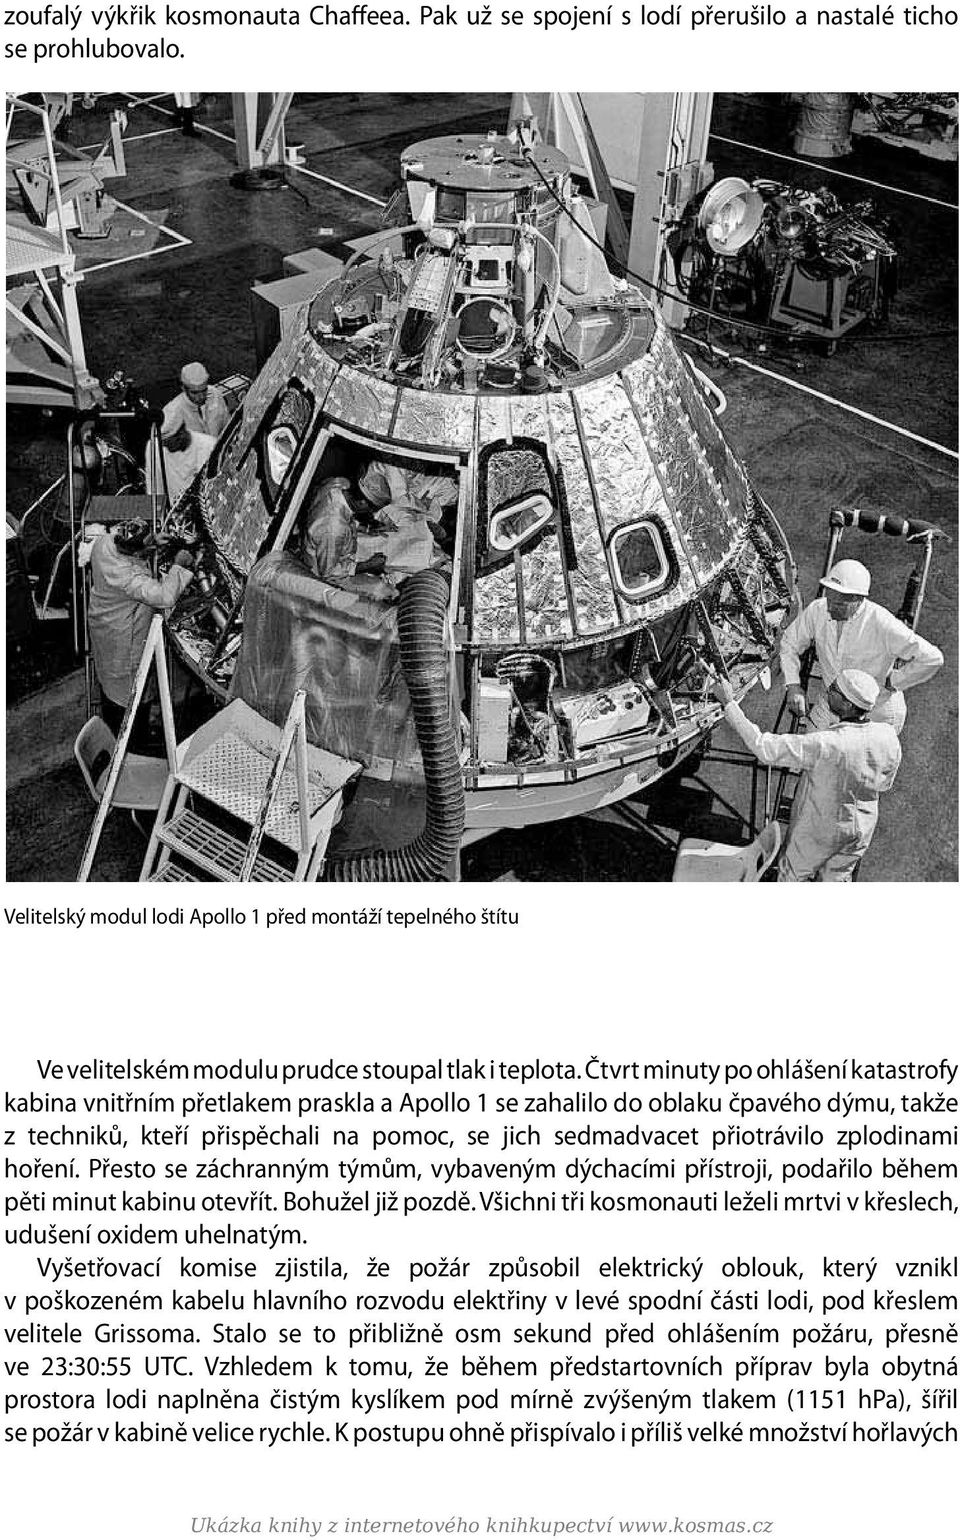 Čtvrt minuty po ohlášení katastrofy kabina vnitřním přetlakem praskla a Apollo 1 se zahalilo do oblaku čpavého dýmu, takže z techniků, kteří přispě chali na pomoc, se jich sedmadvacet přiotrávilo